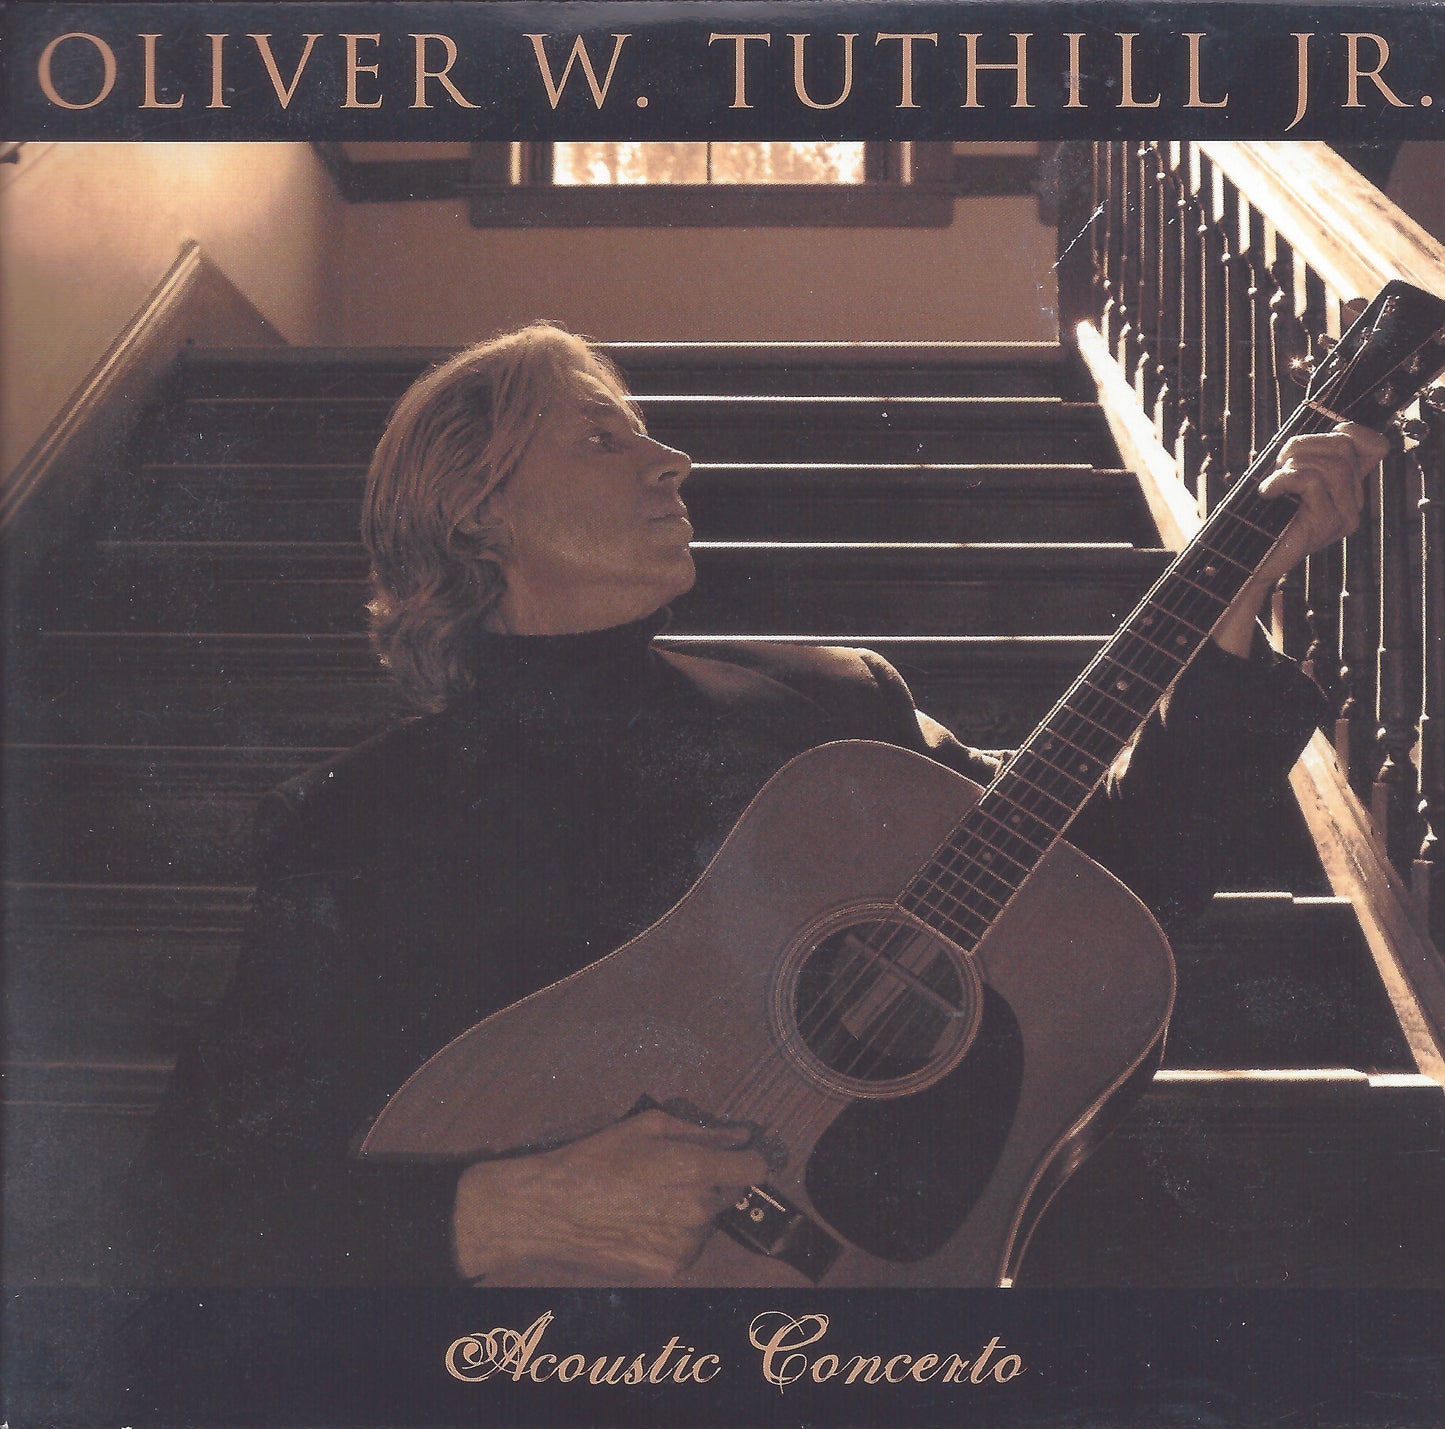 Acoustic Concerto - Oliver W. Tuthill Jr.